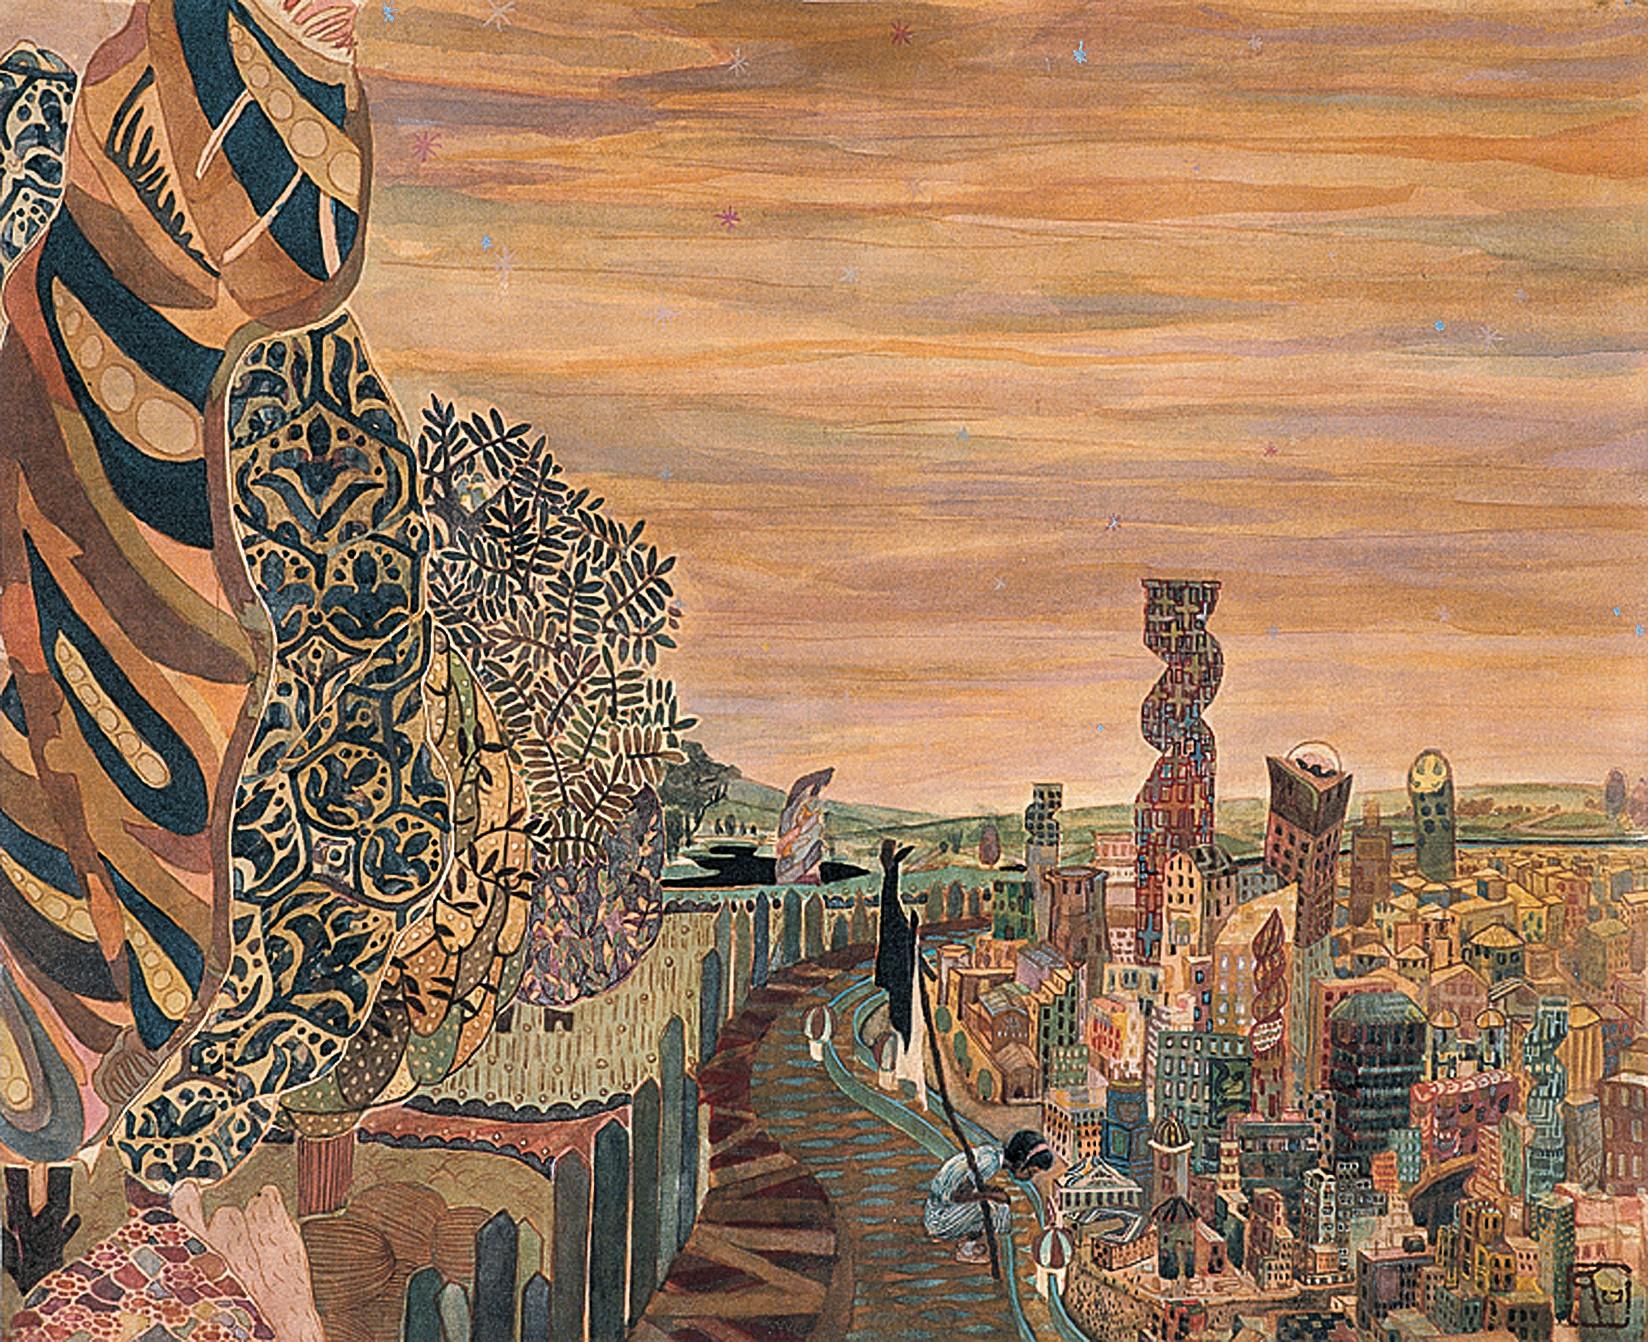 « La ville », peinture figurative en soie, aventure de courage de vie